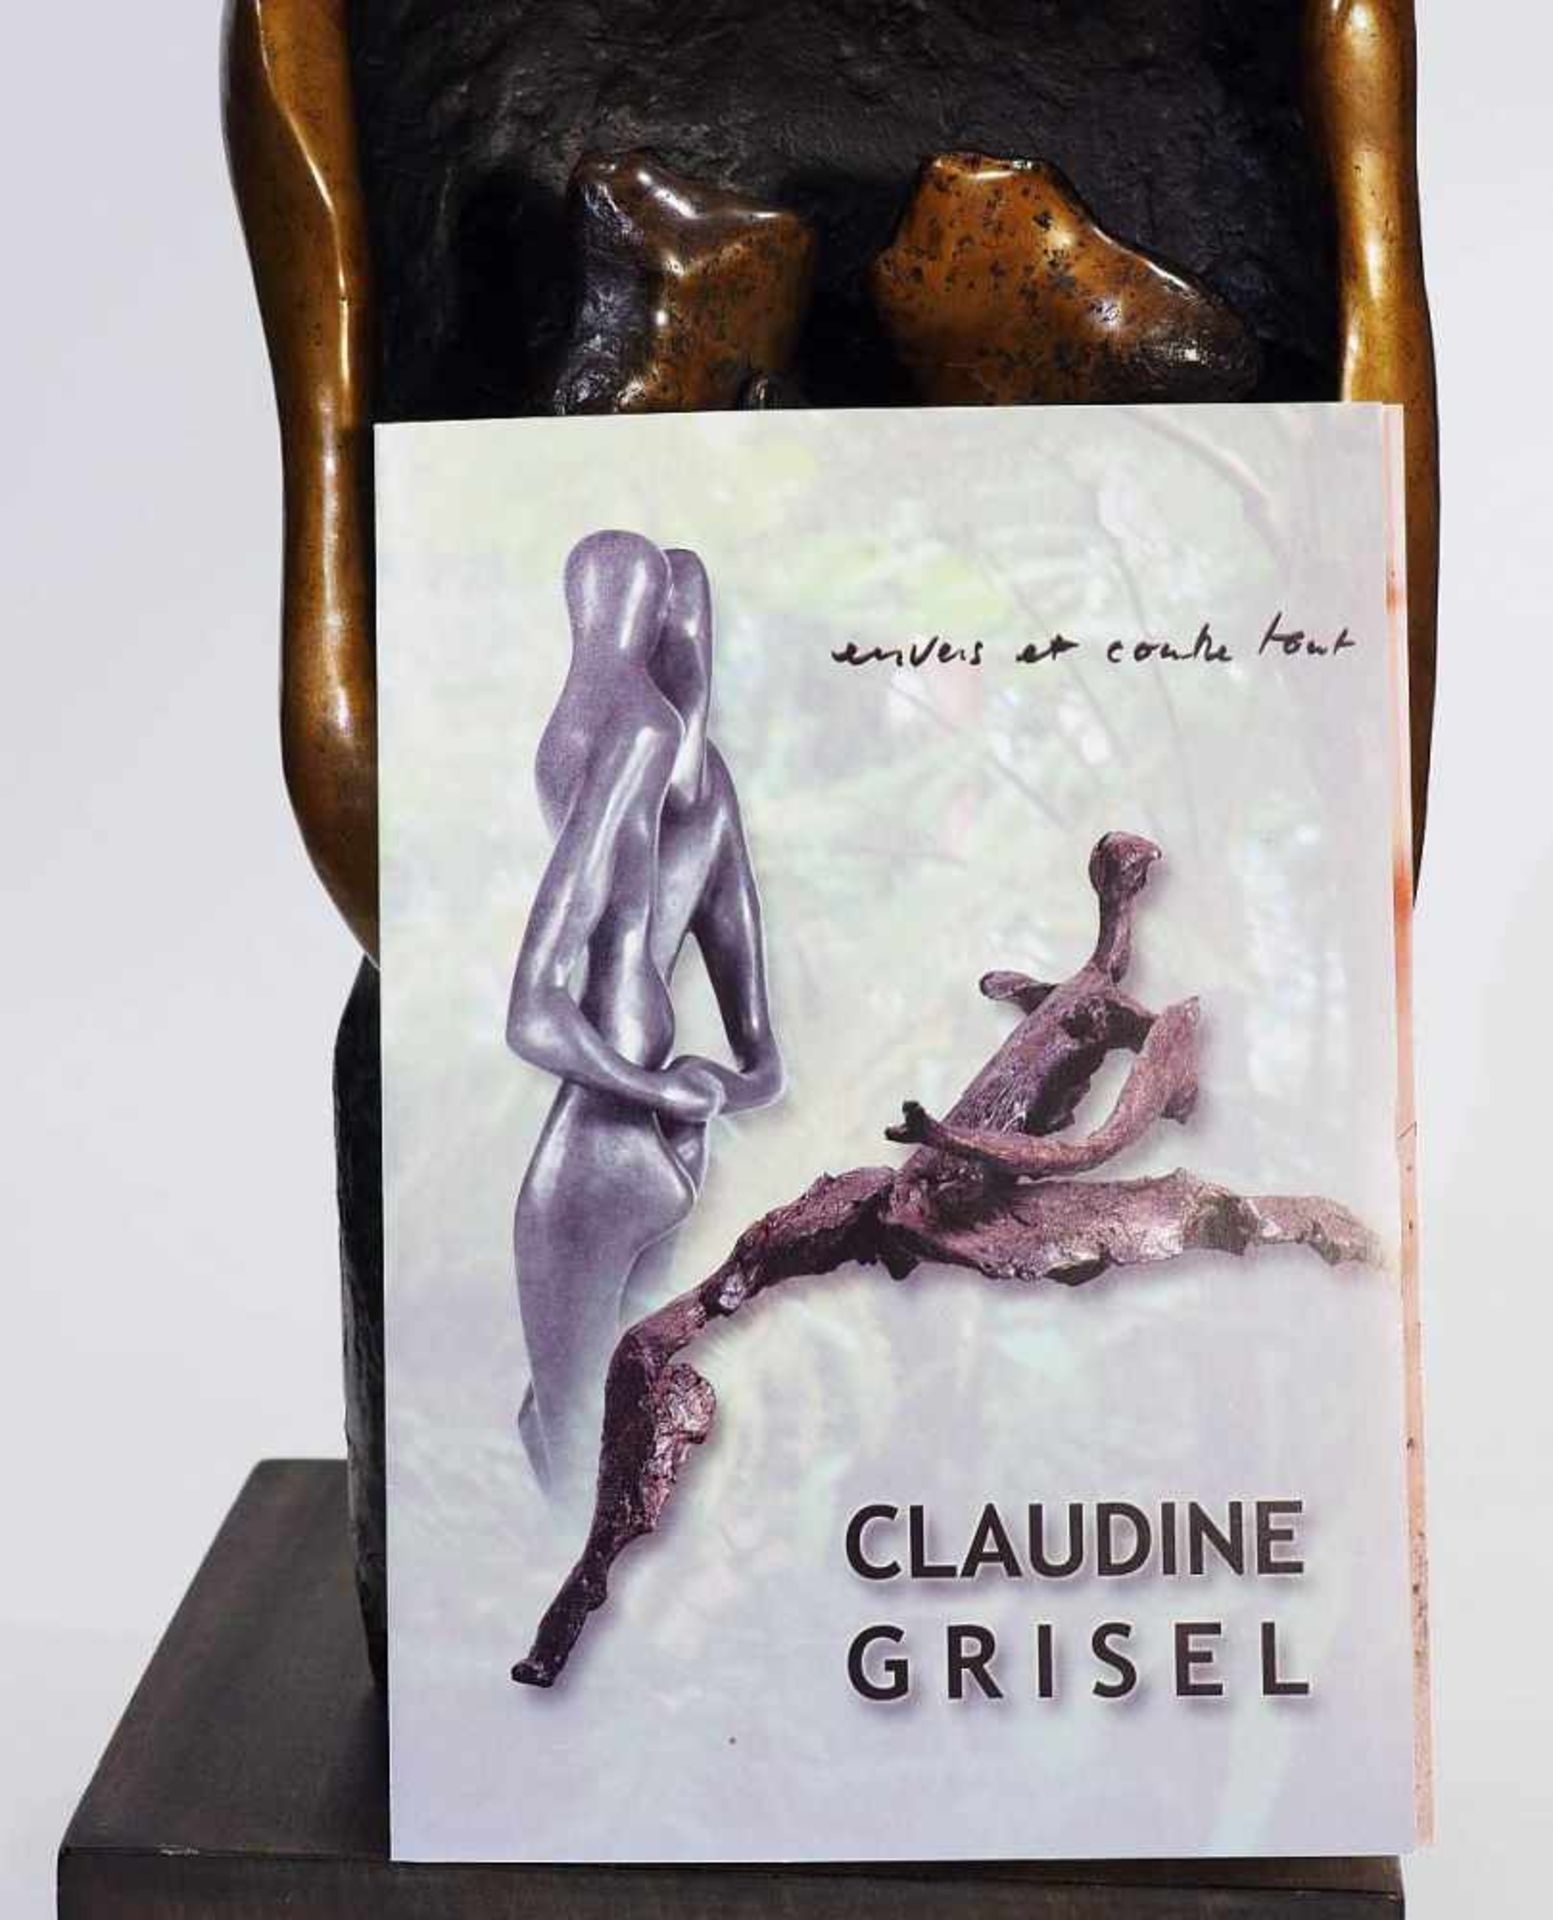 GRISEL, Claudine. GRISEL, Claudine. Geboren 1943 Fleurier(Karton Neuenburg/Schweiz) . " - Image 8 of 9